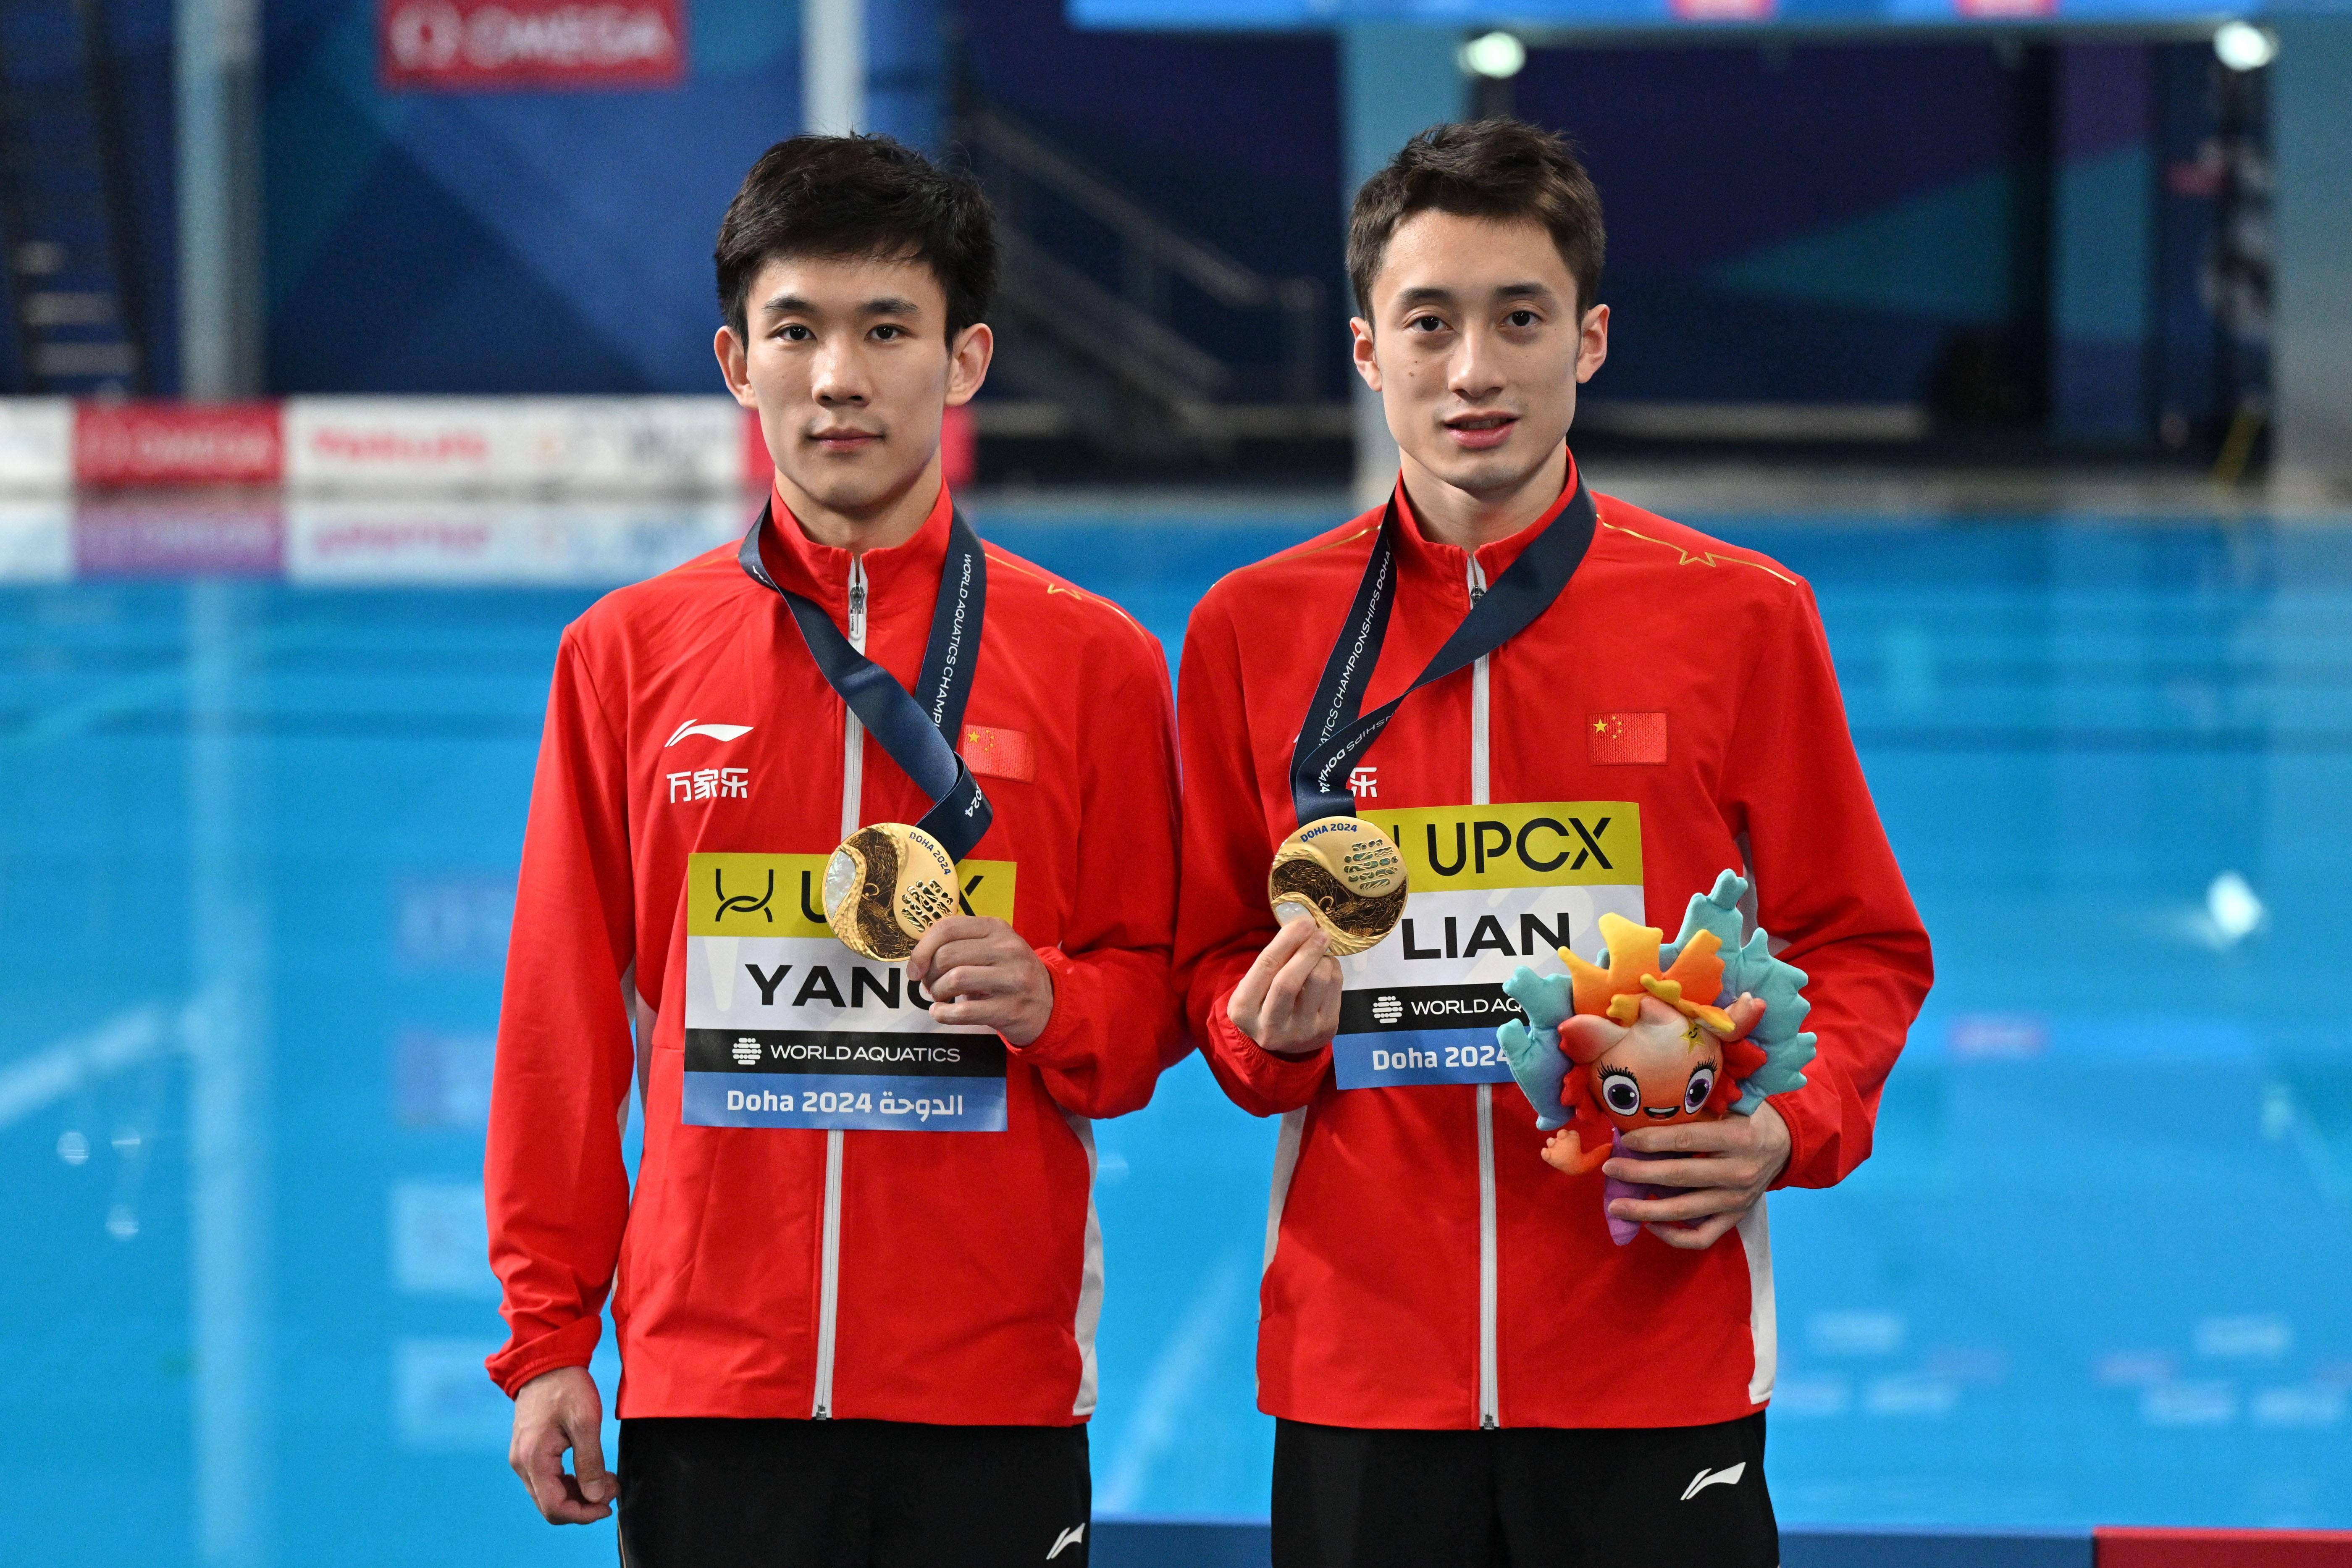 练俊杰/杨昊获游泳世锦赛跳水男双10米台冠军